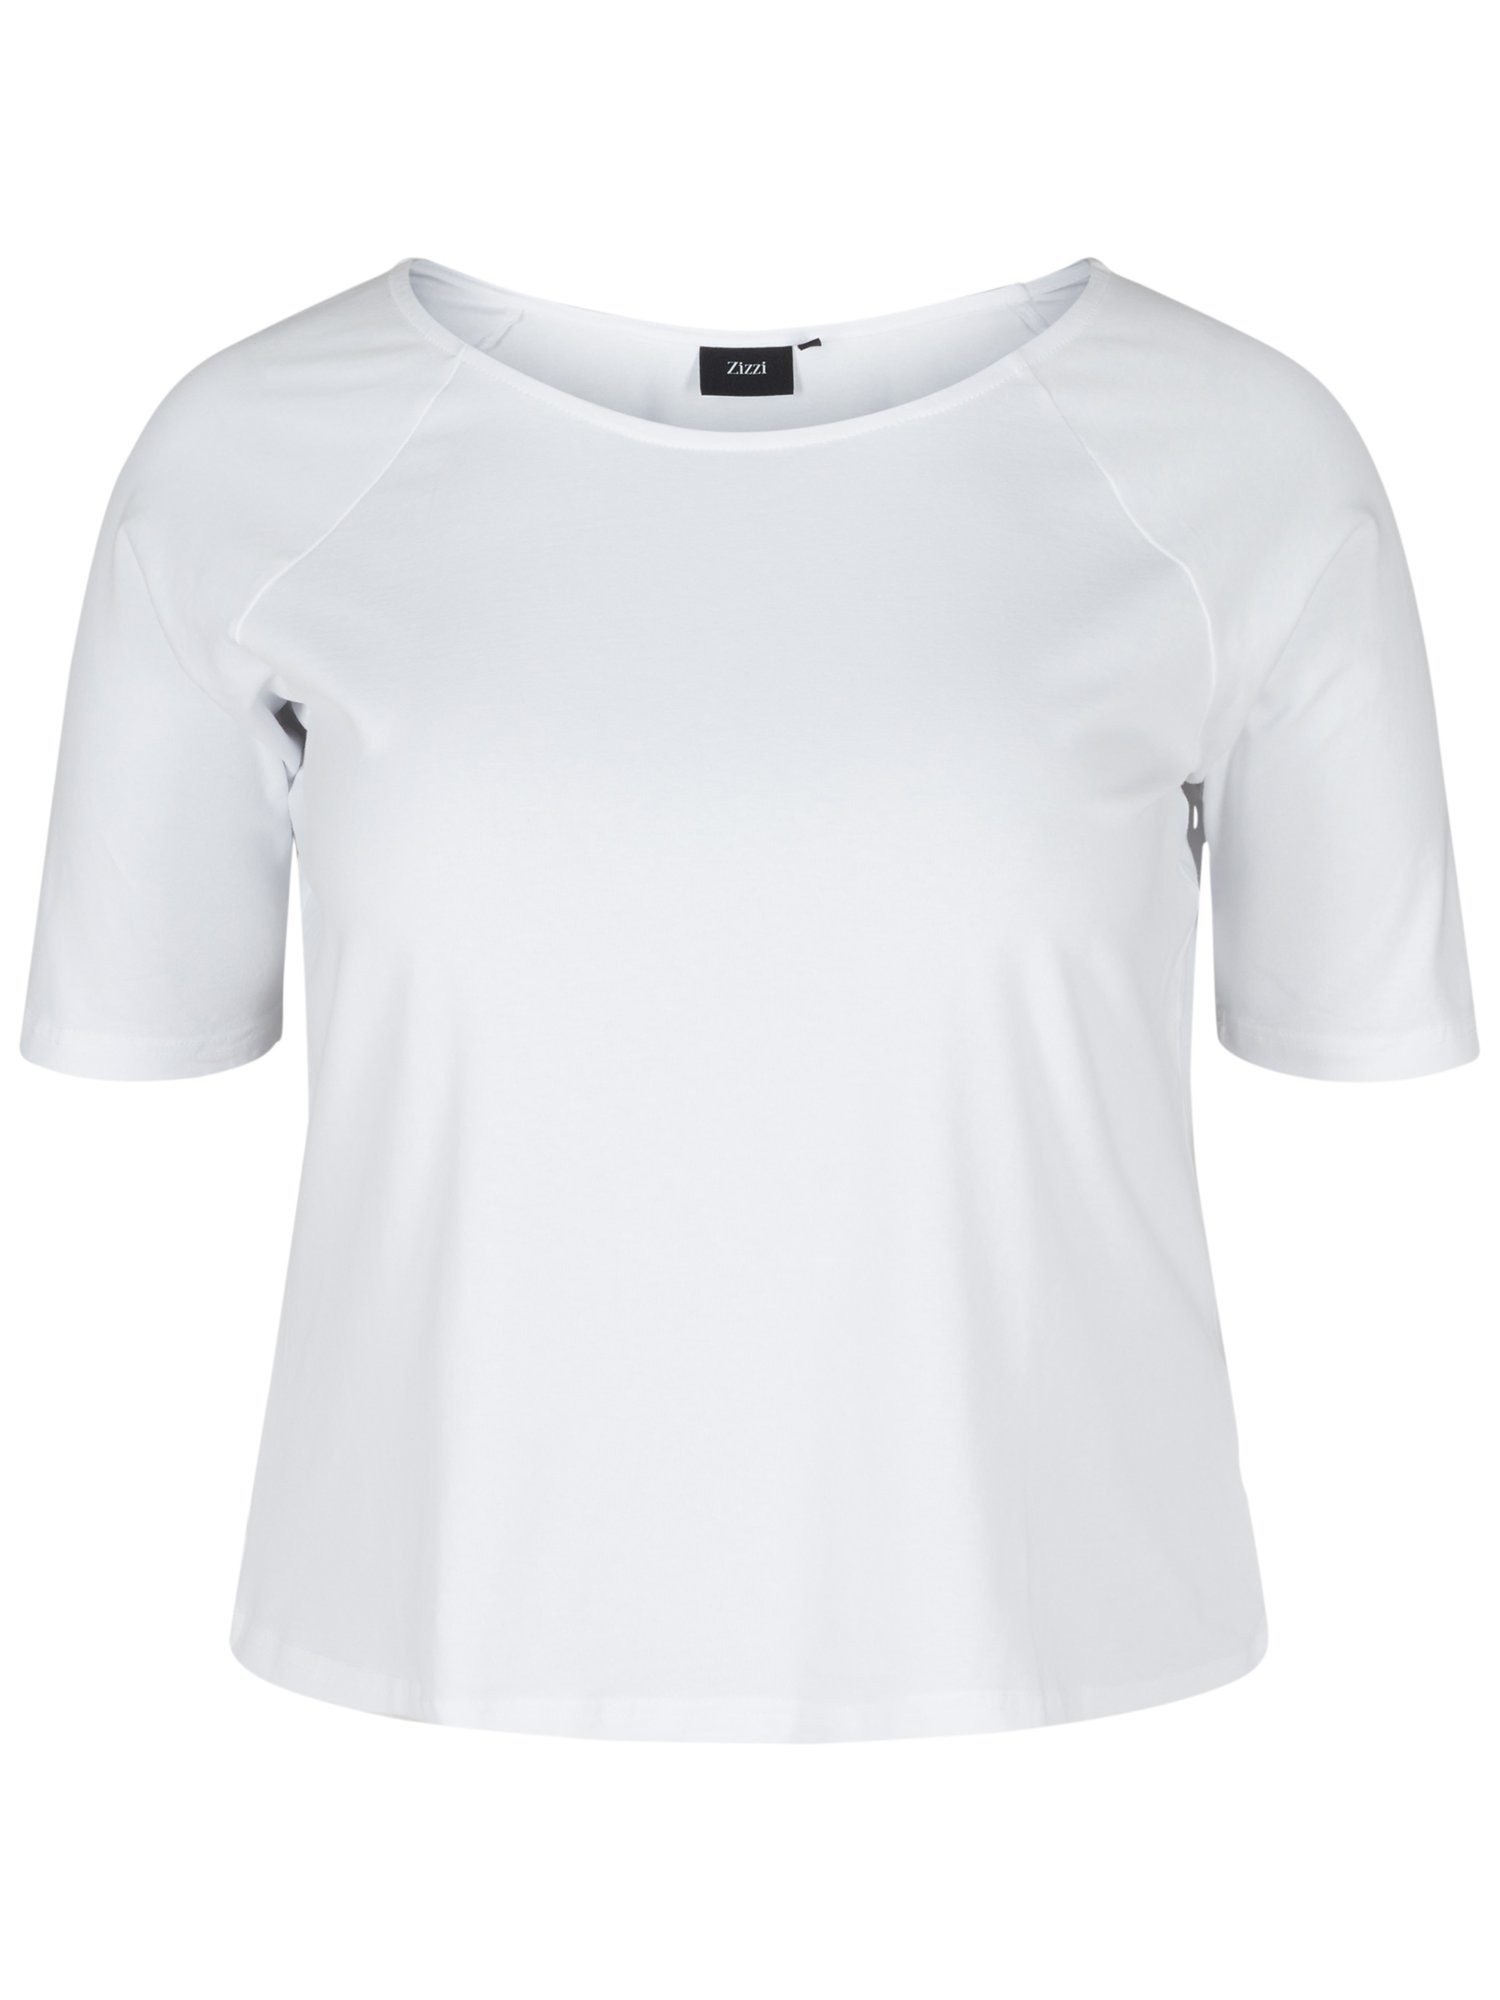 Kobiety Odzież Zizzi Koszulka w kolorze Białym 